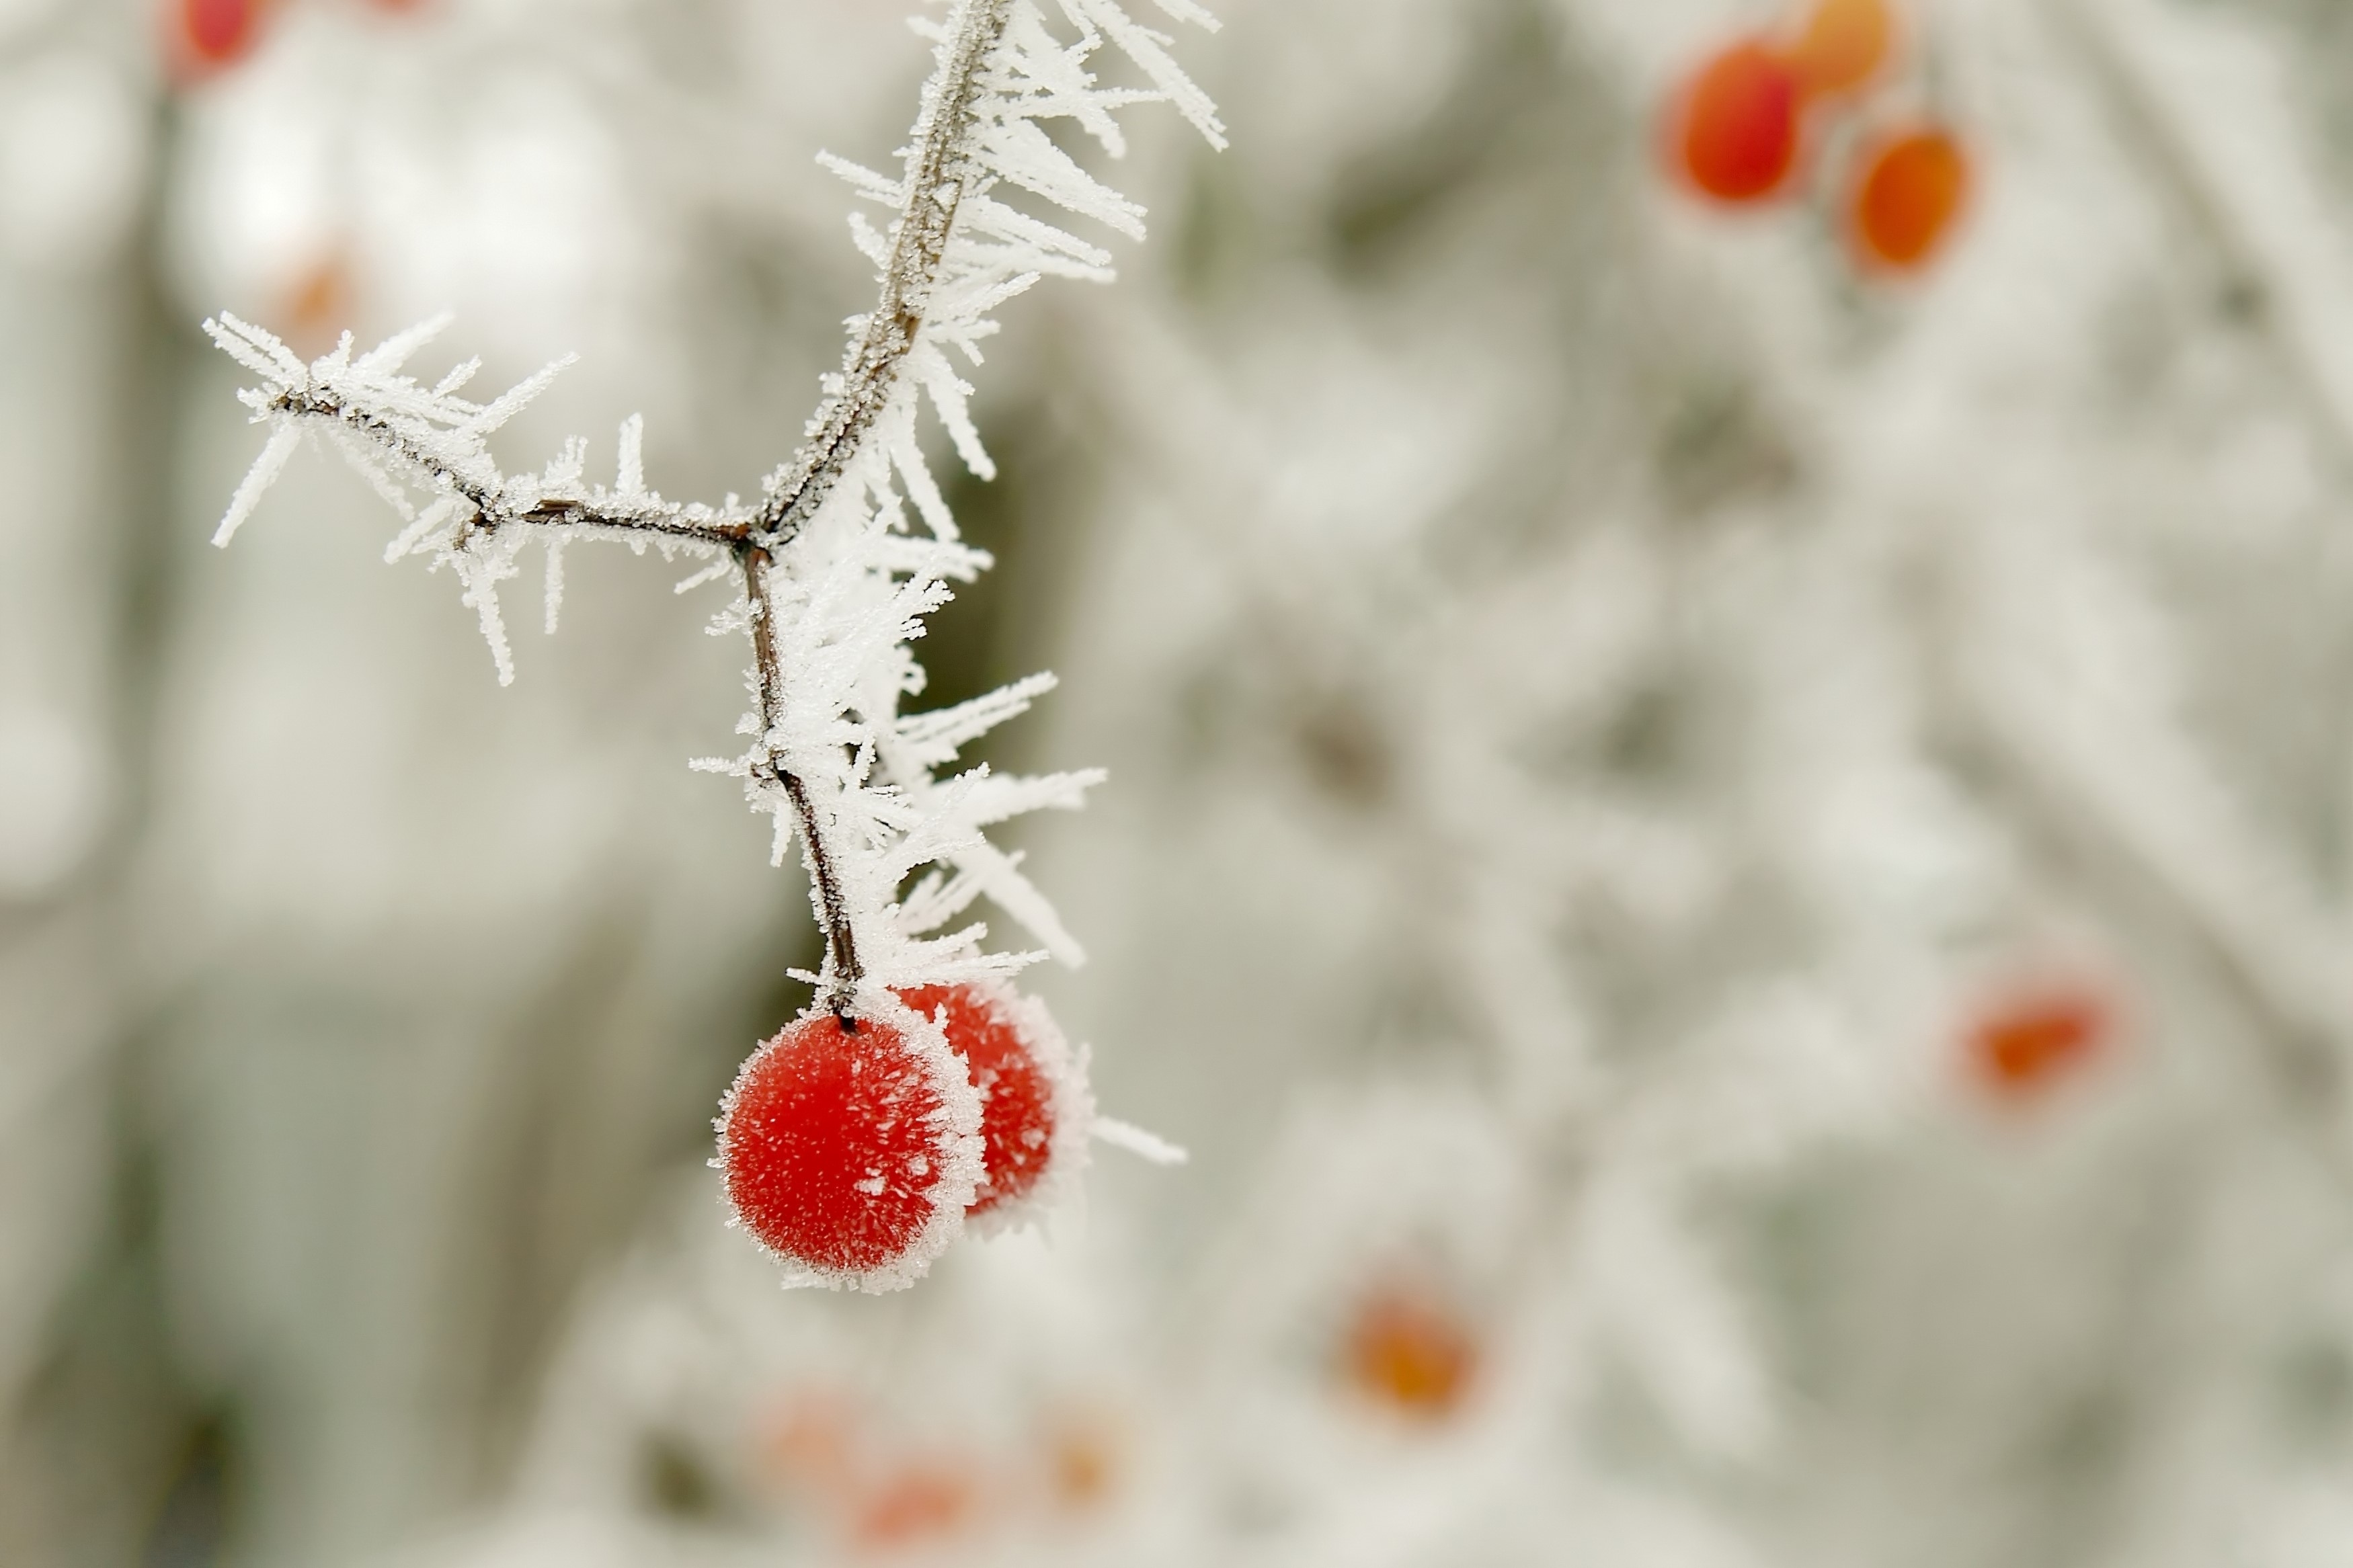 立冬时节的慢性咽炎立冬,是二十四节气中的第十九个,也是冬天的开始